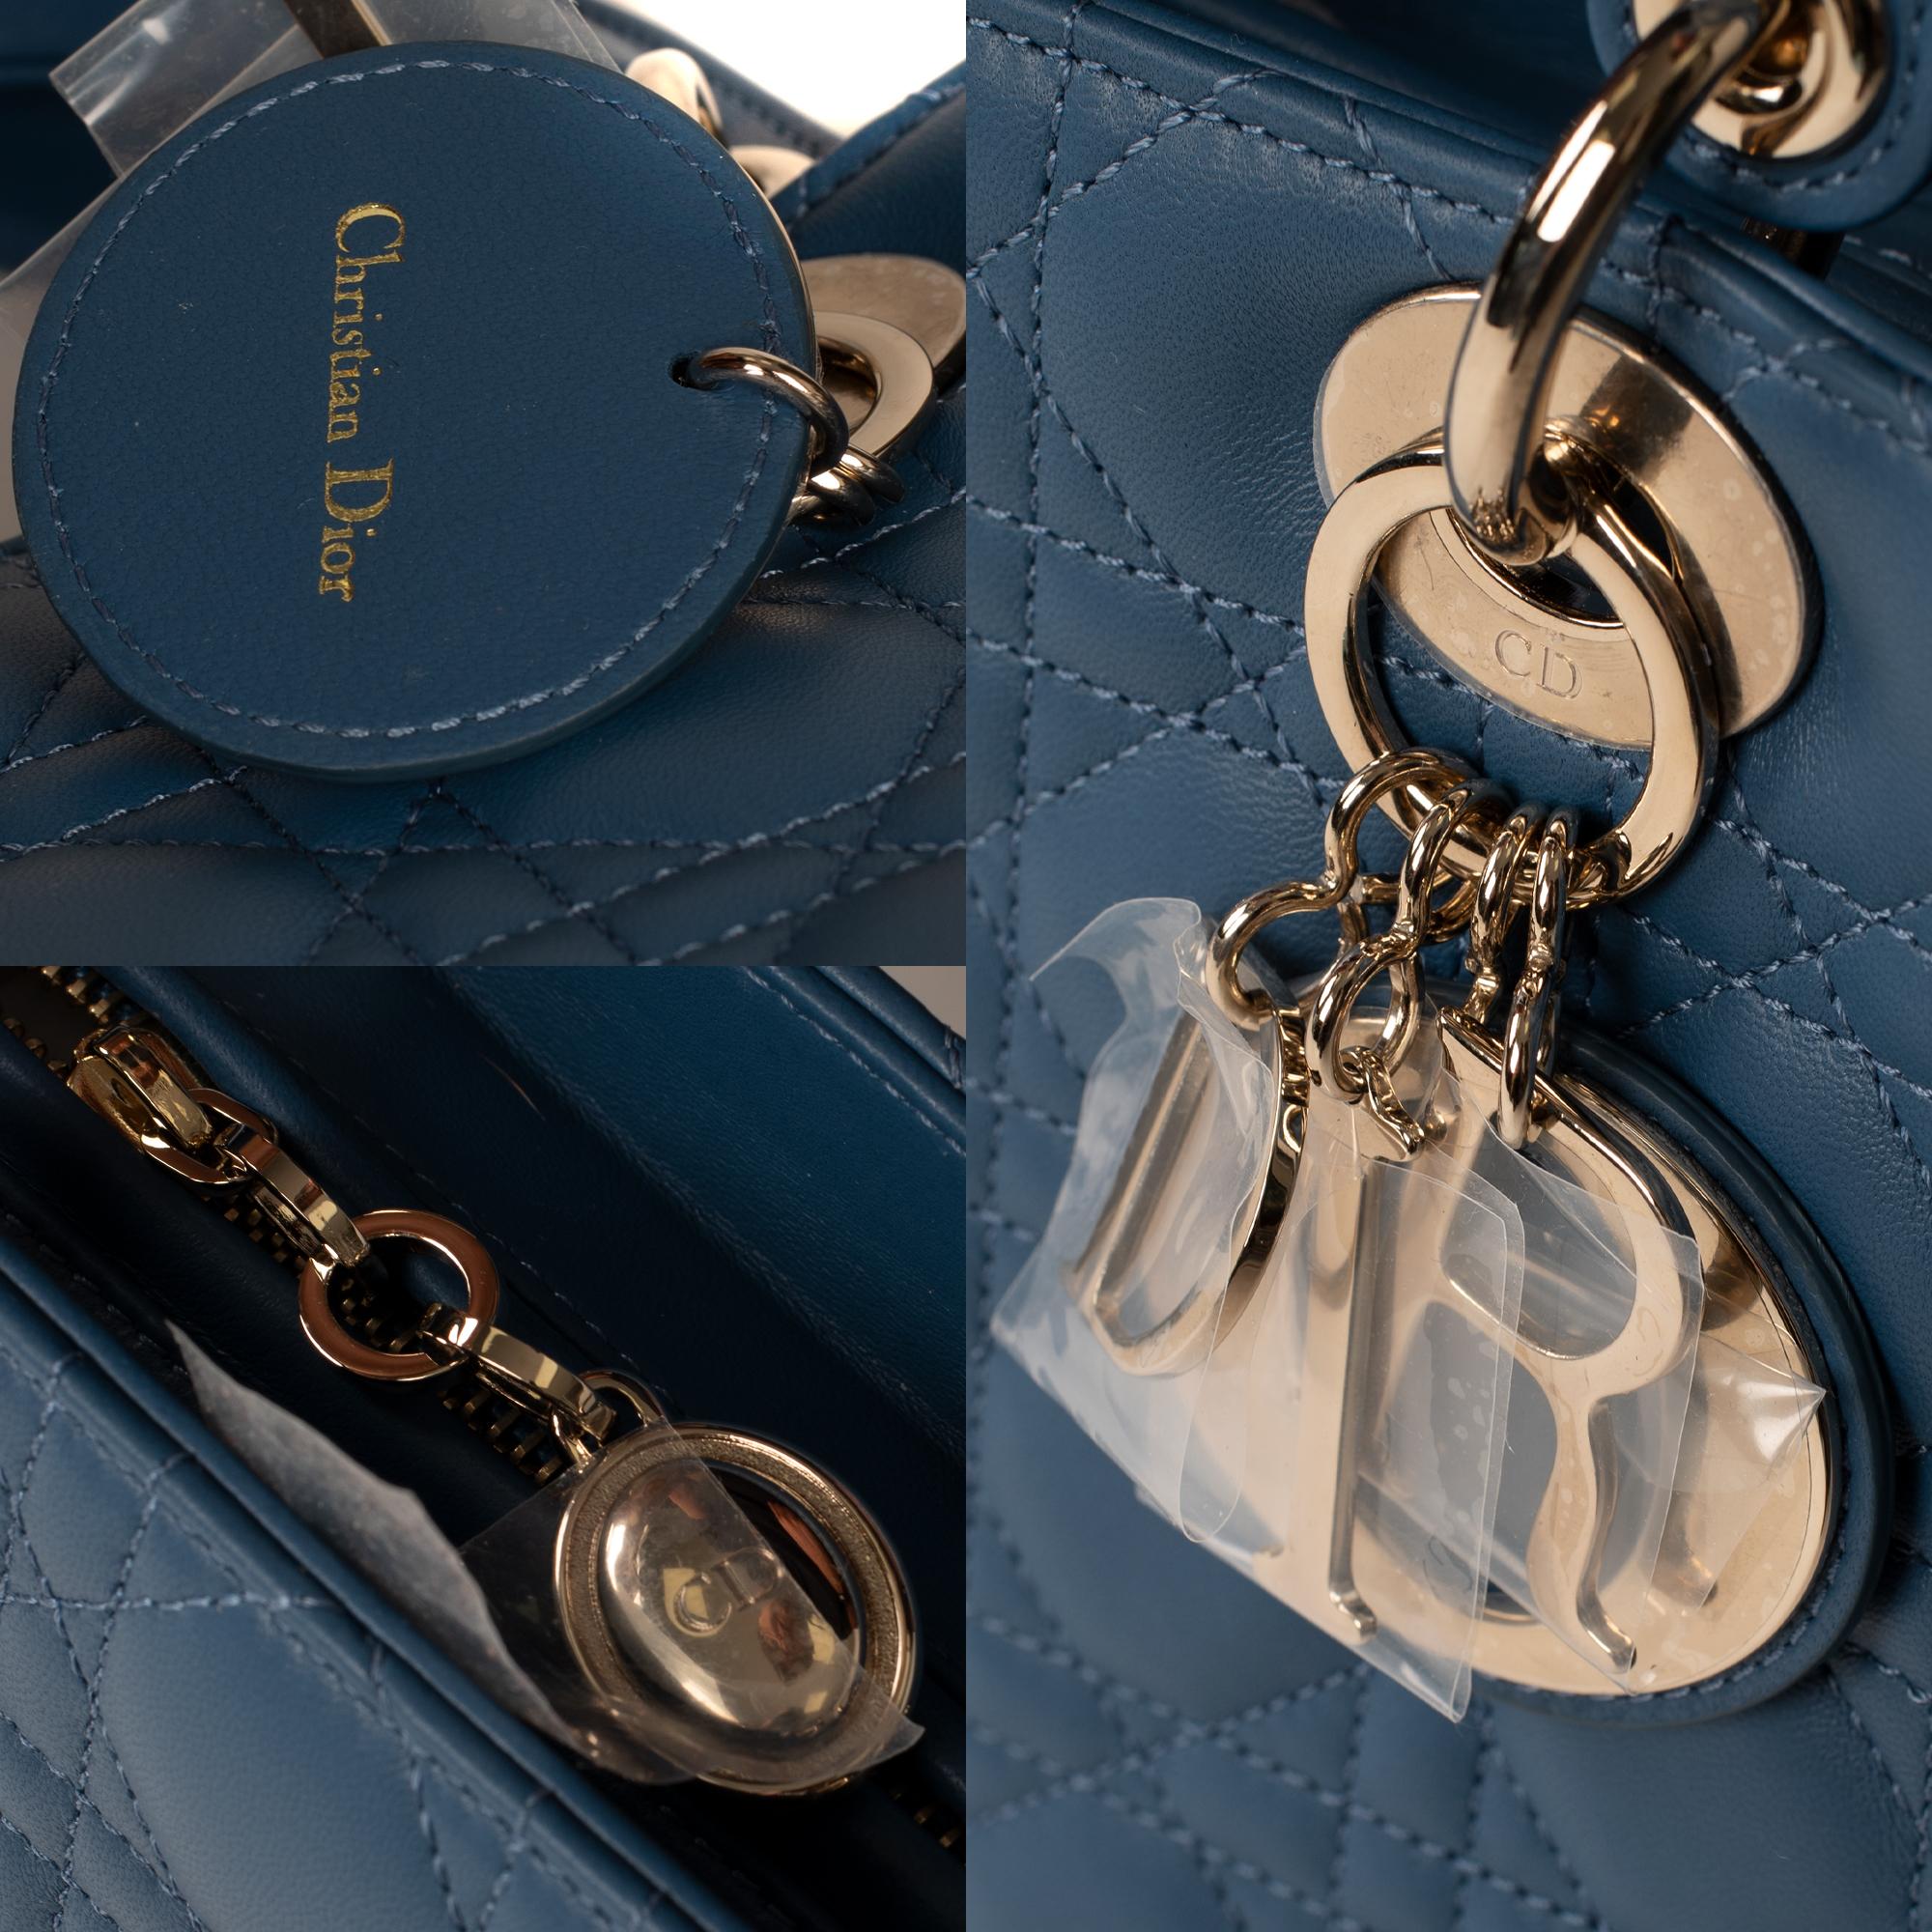 Women's  Christian Dior Lady Dior MM (Medium size) handbag in blue cannage leather, PHW